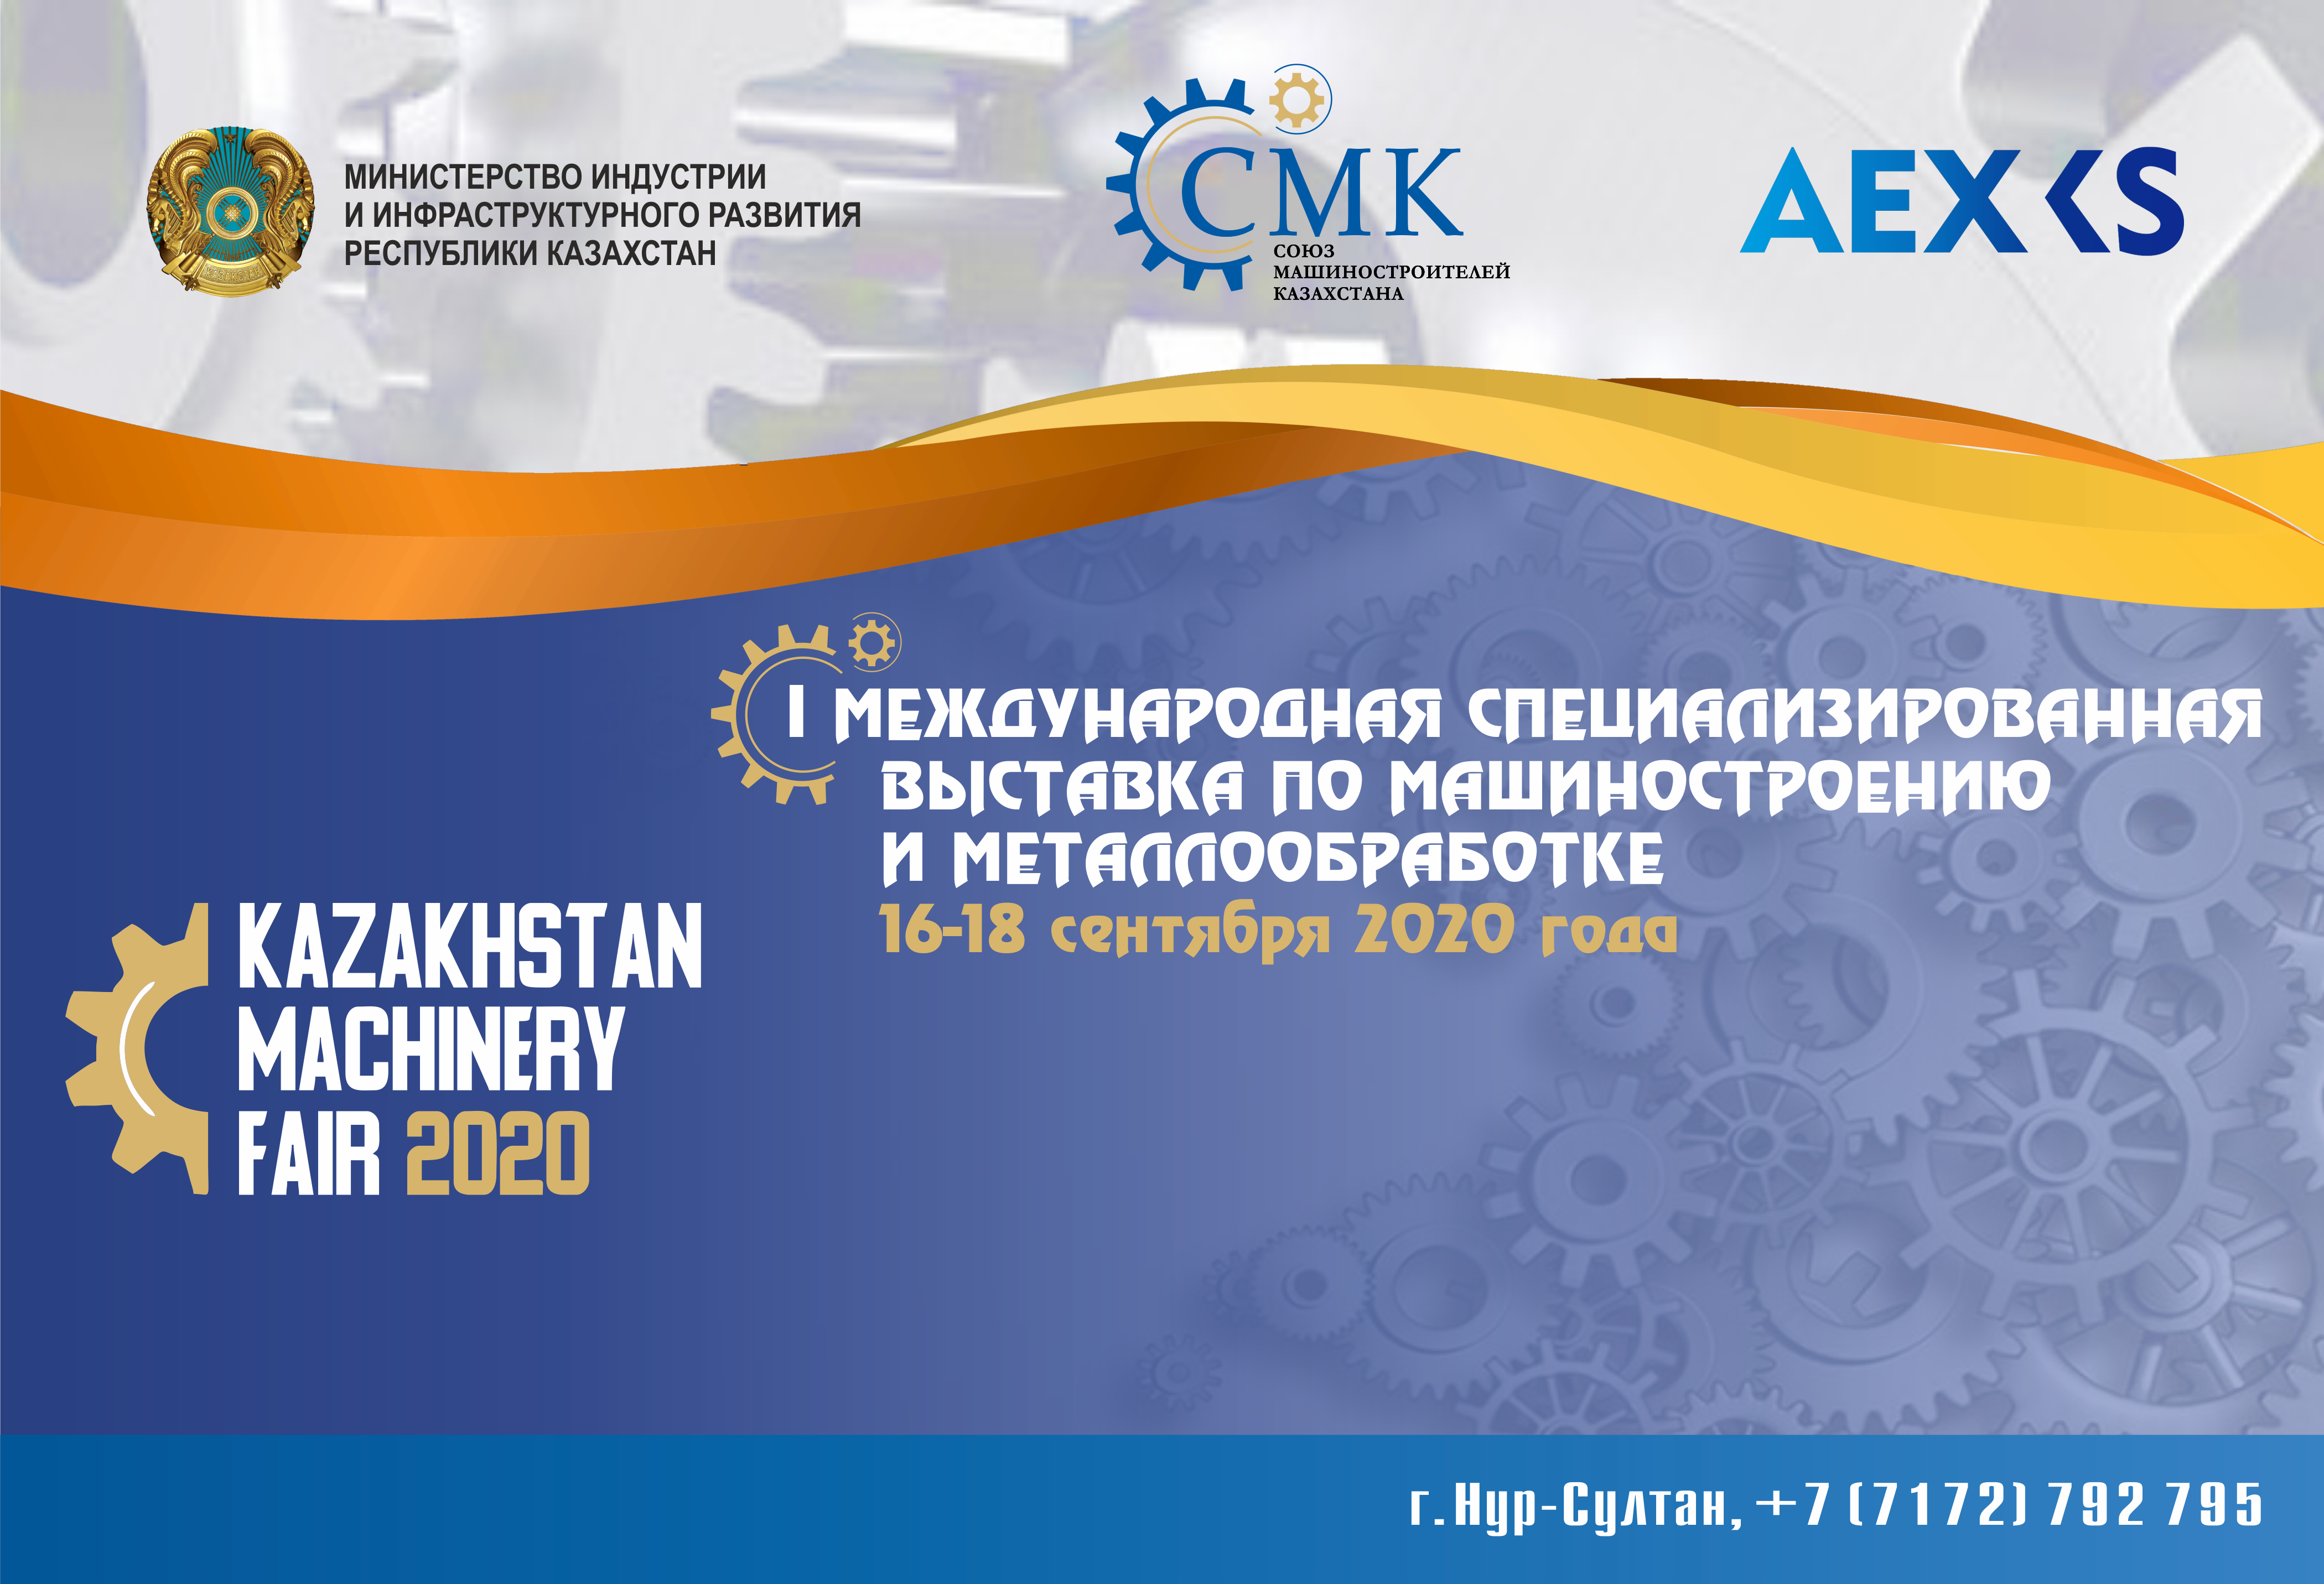 Крупнейшая выставка по машиностроению и металлообработке в Центральной Азии